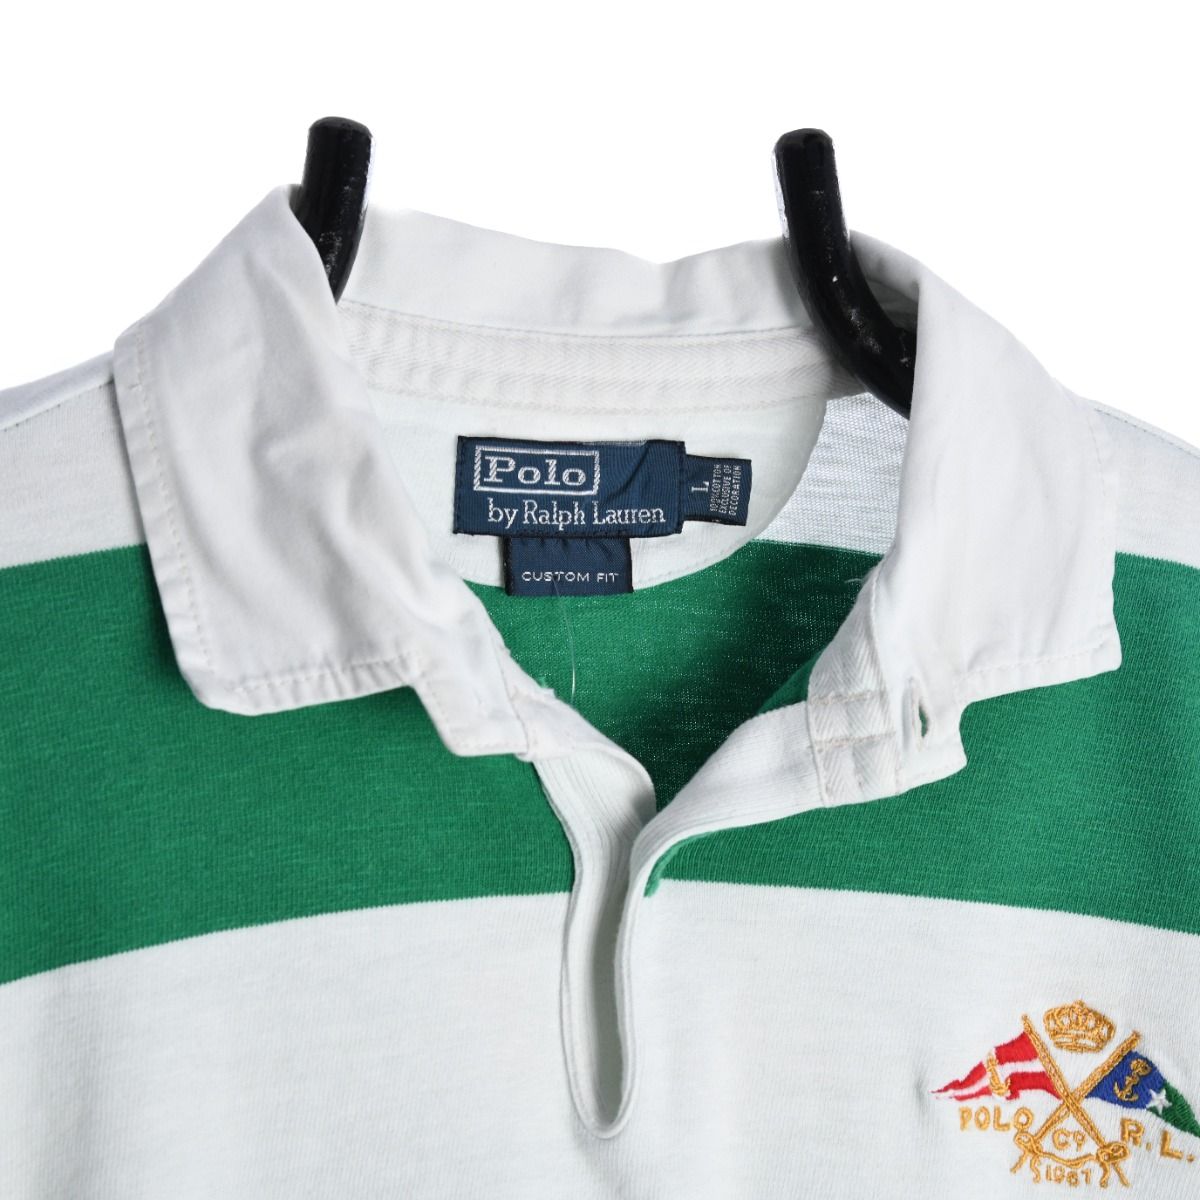 Polo Ralph Lauren Rugby Shirt